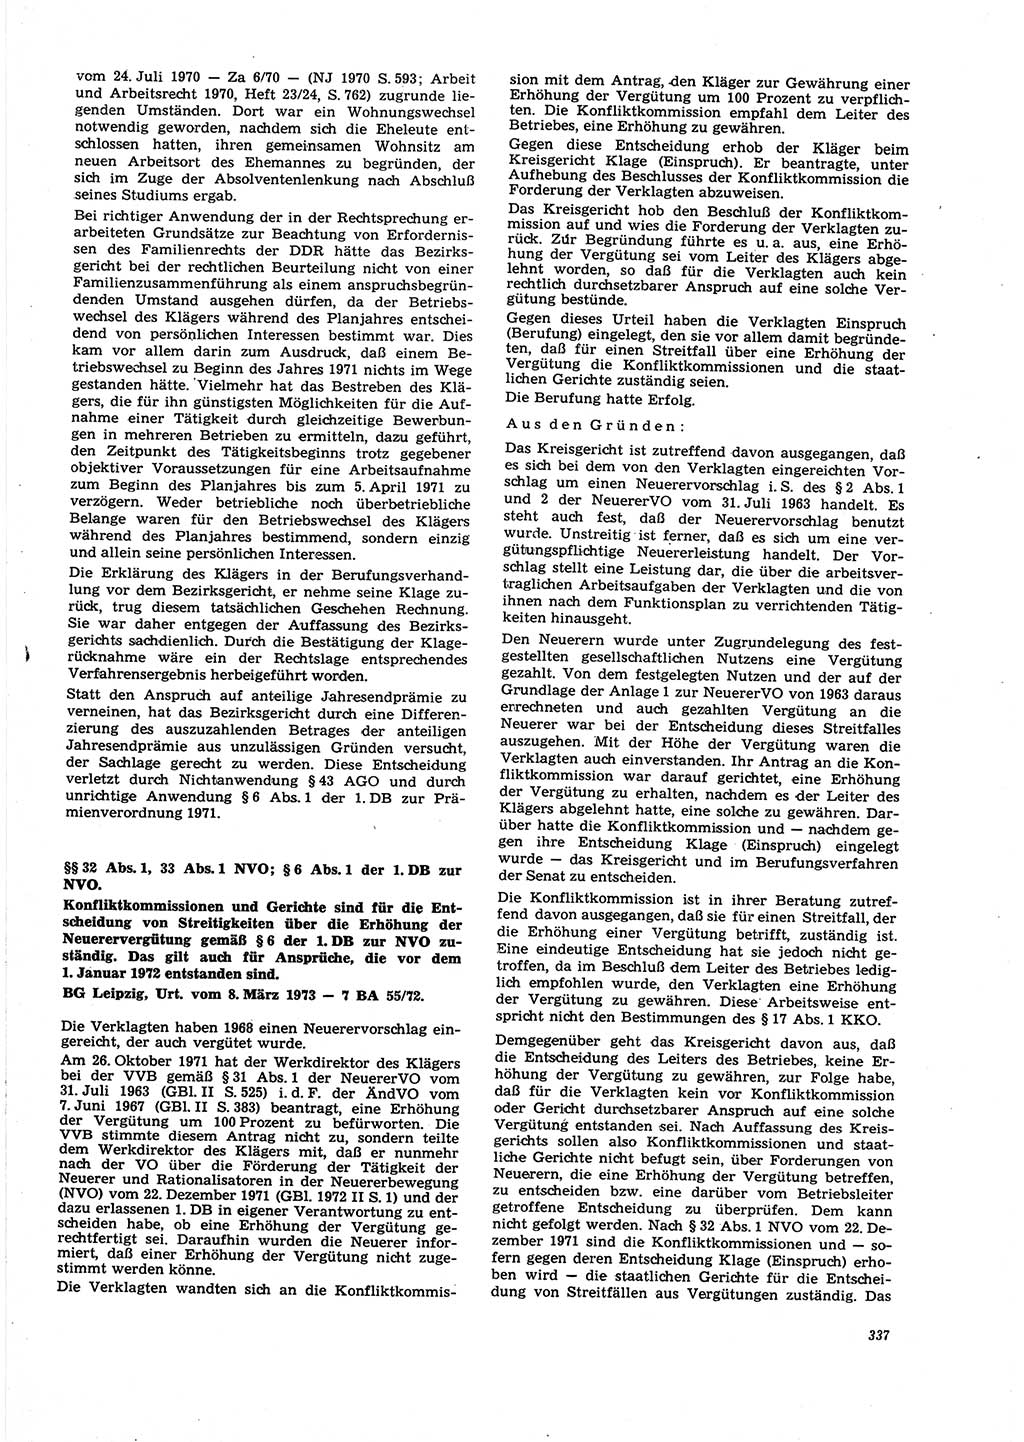 Neue Justiz (NJ), Zeitschrift für Recht und Rechtswissenschaft [Deutsche Demokratische Republik (DDR)], 27. Jahrgang 1973, Seite 337 (NJ DDR 1973, S. 337)